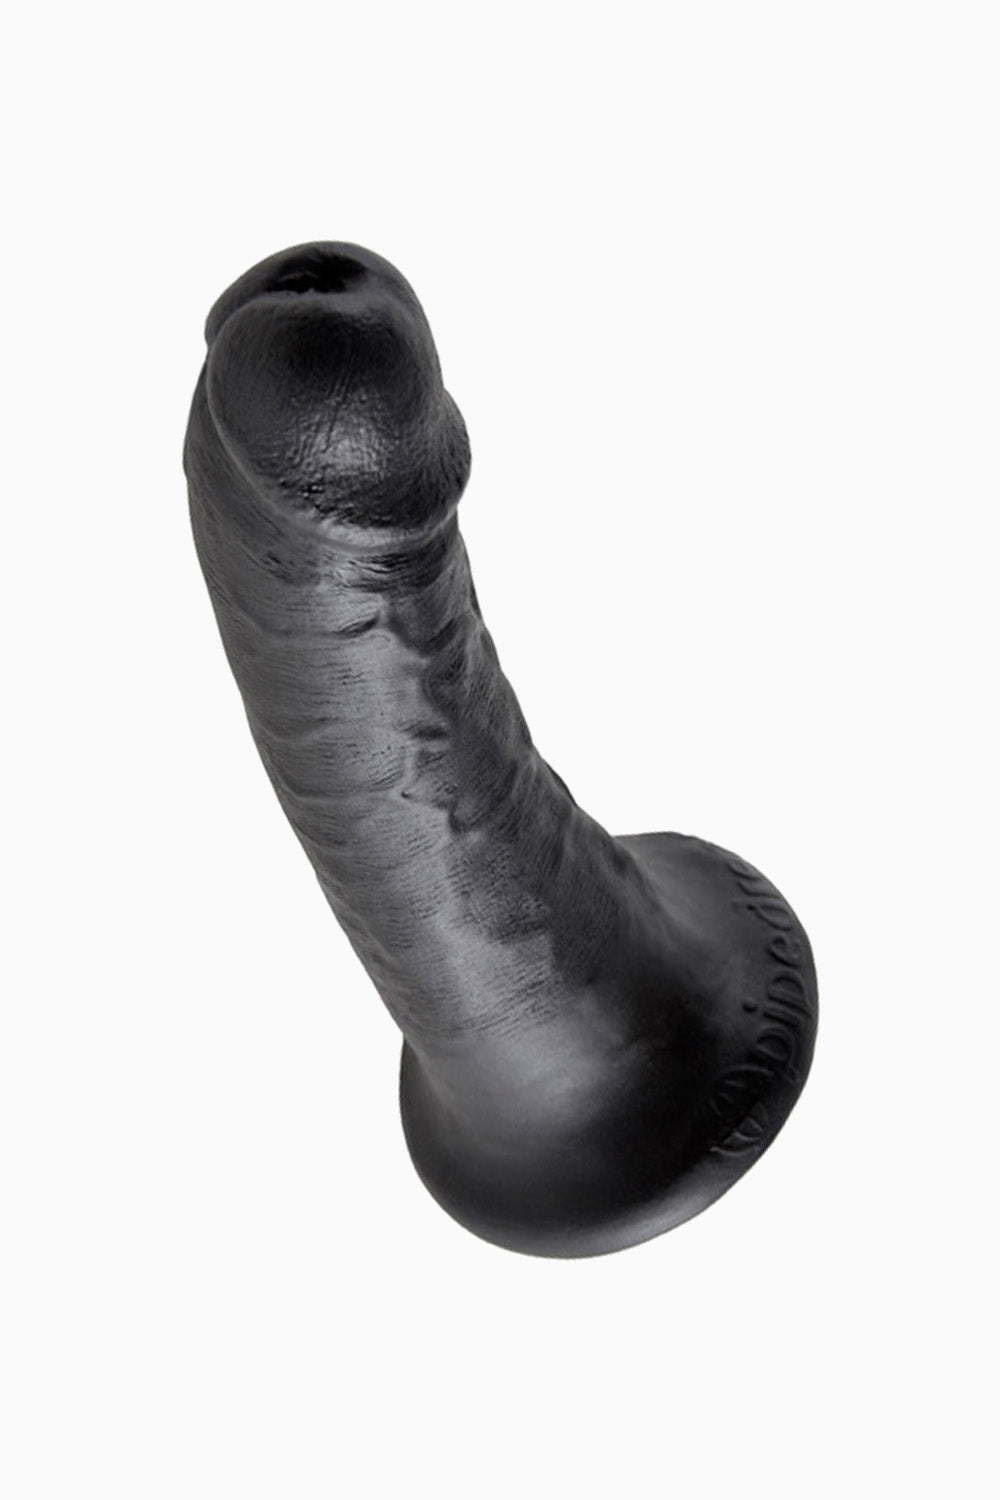 King Cock Dildo Black, 7 inch